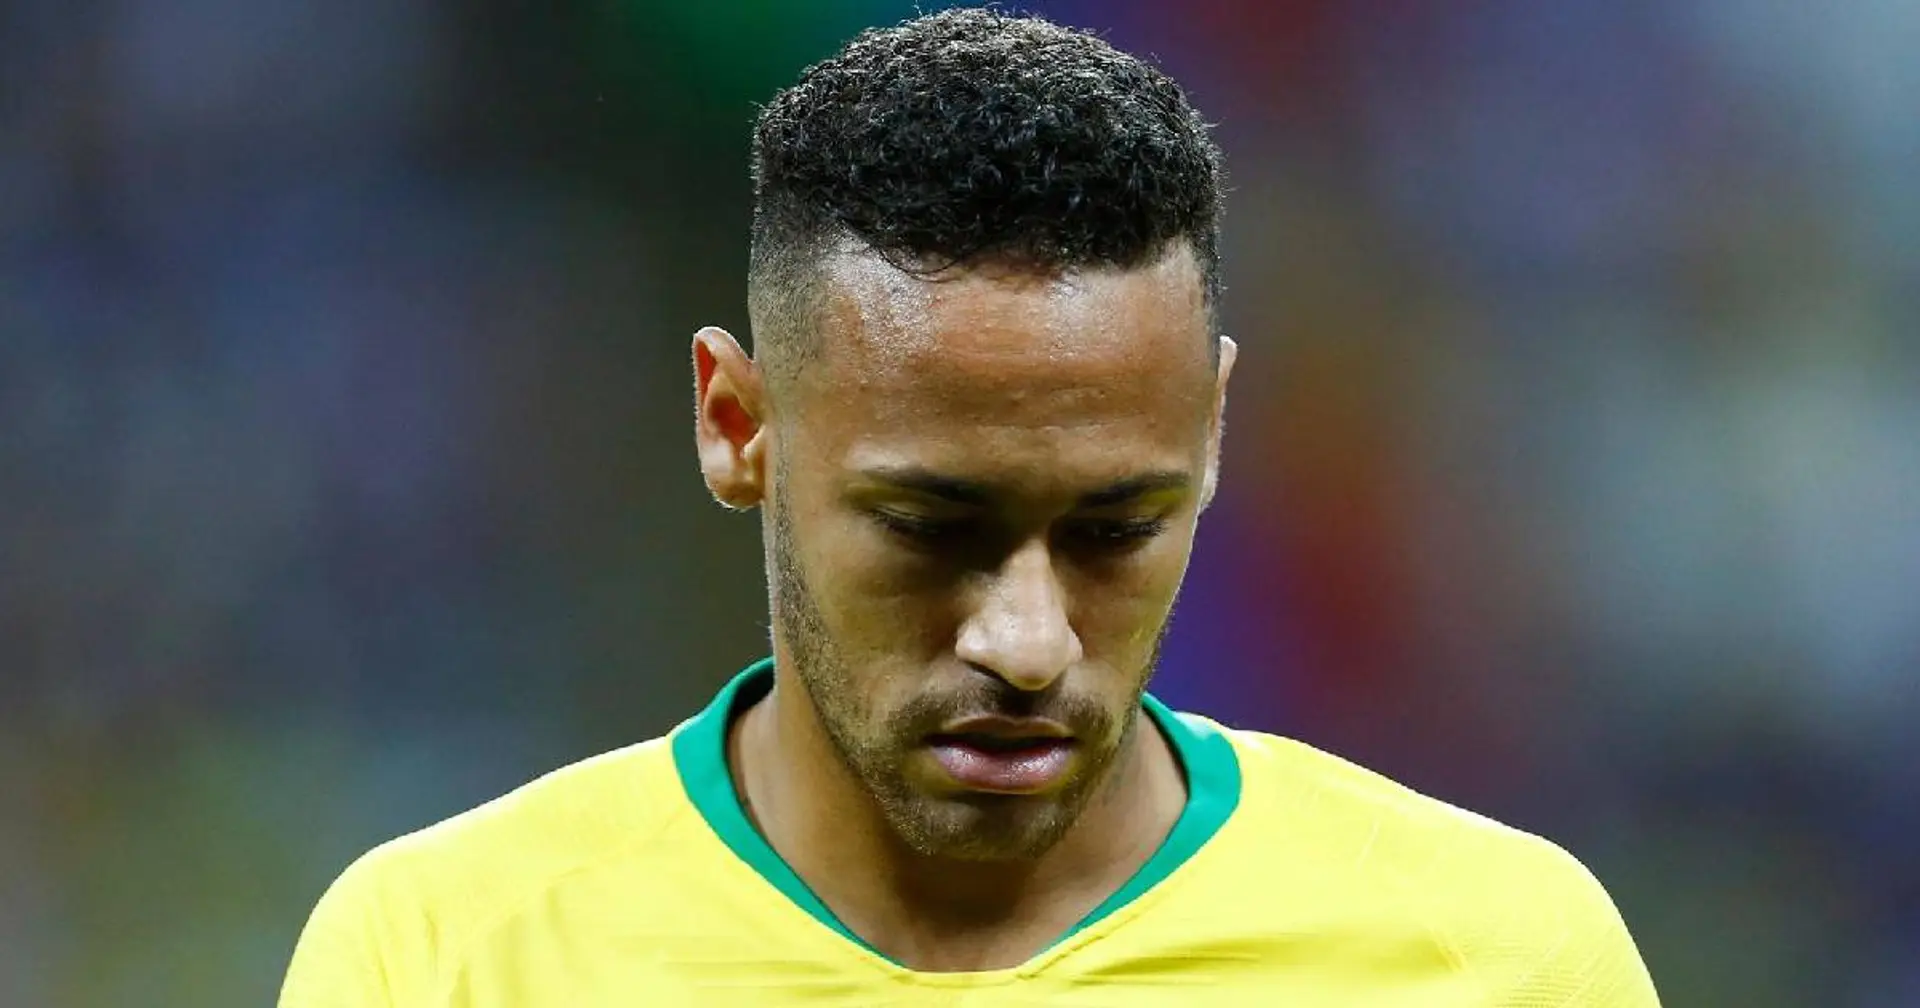 "Figlio di...": furibonda lite tra Neymar e il presidente della Federcalcio brasiliana 